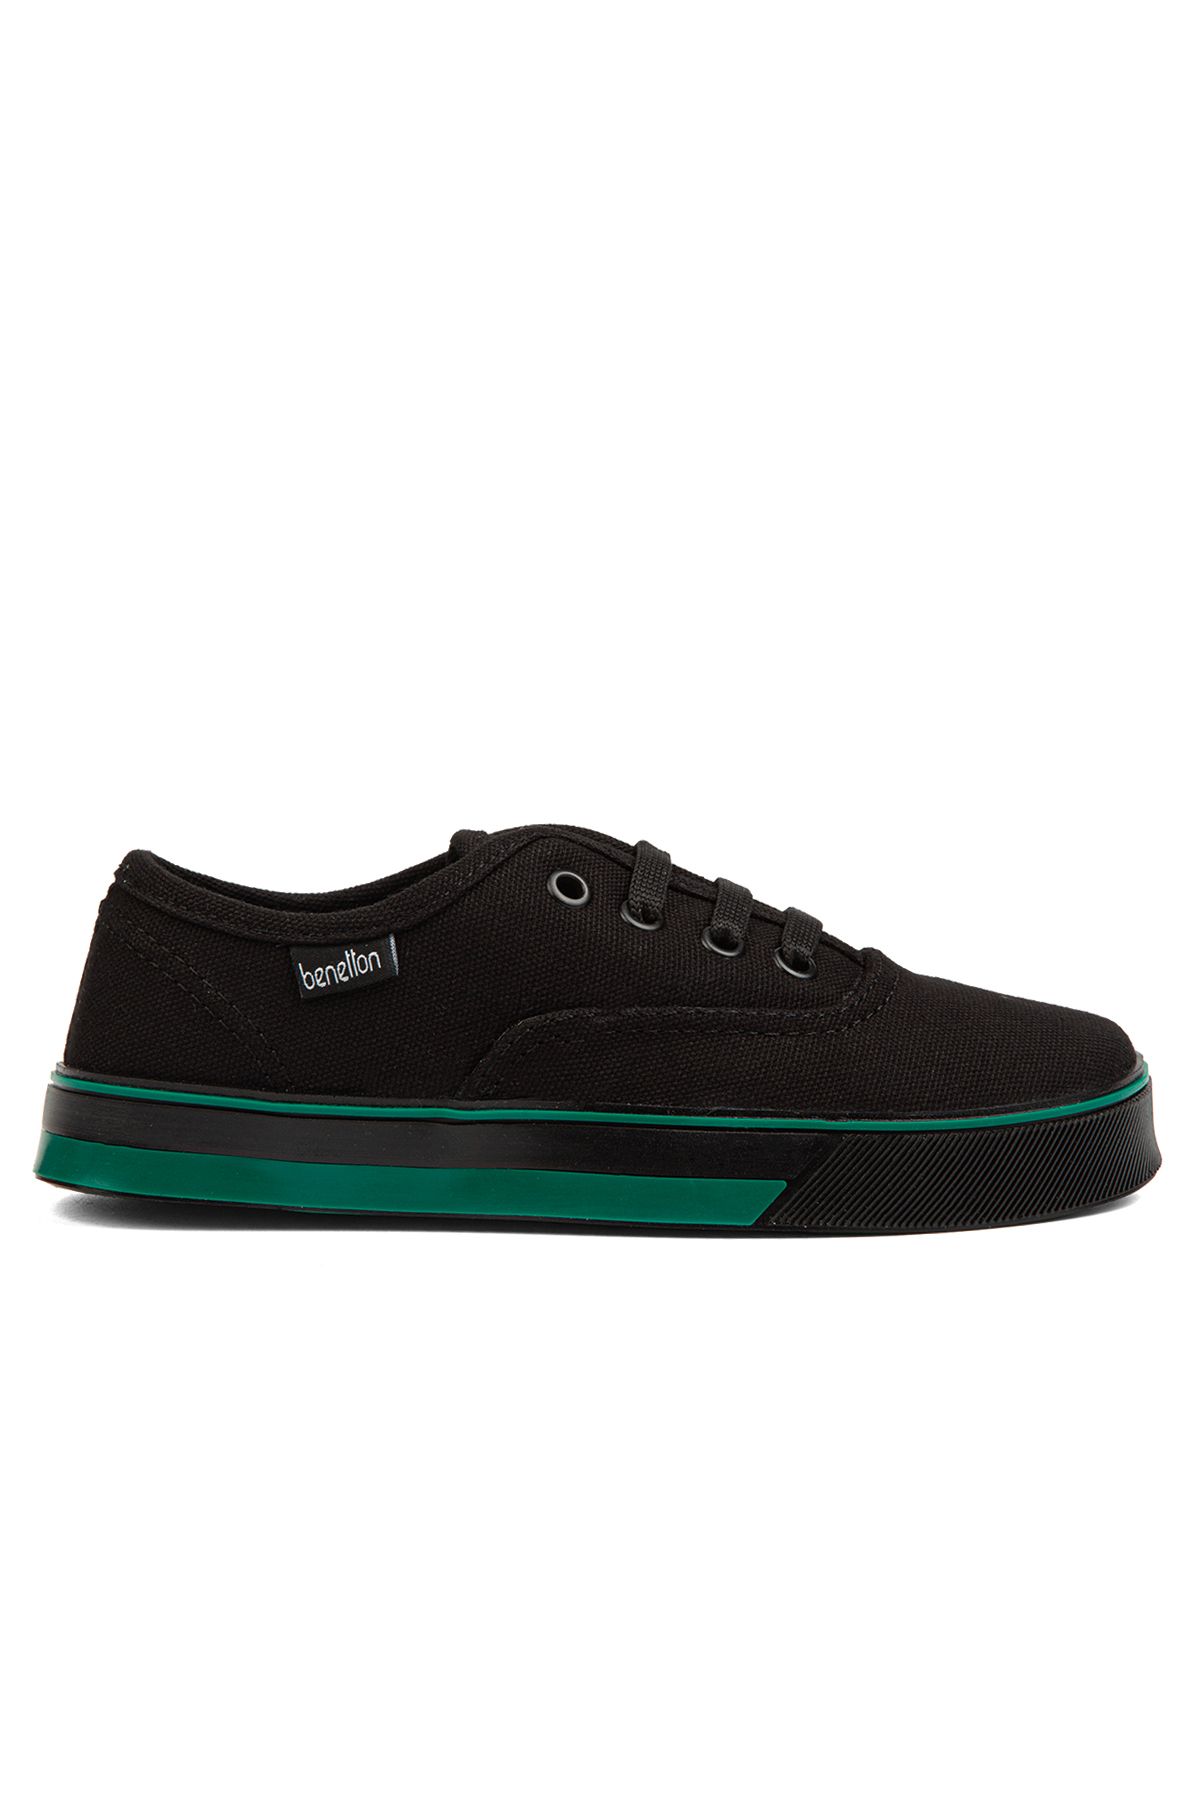 Benetton ® | BN-30957- Siyah - Çocuk Spor Ayakkabı